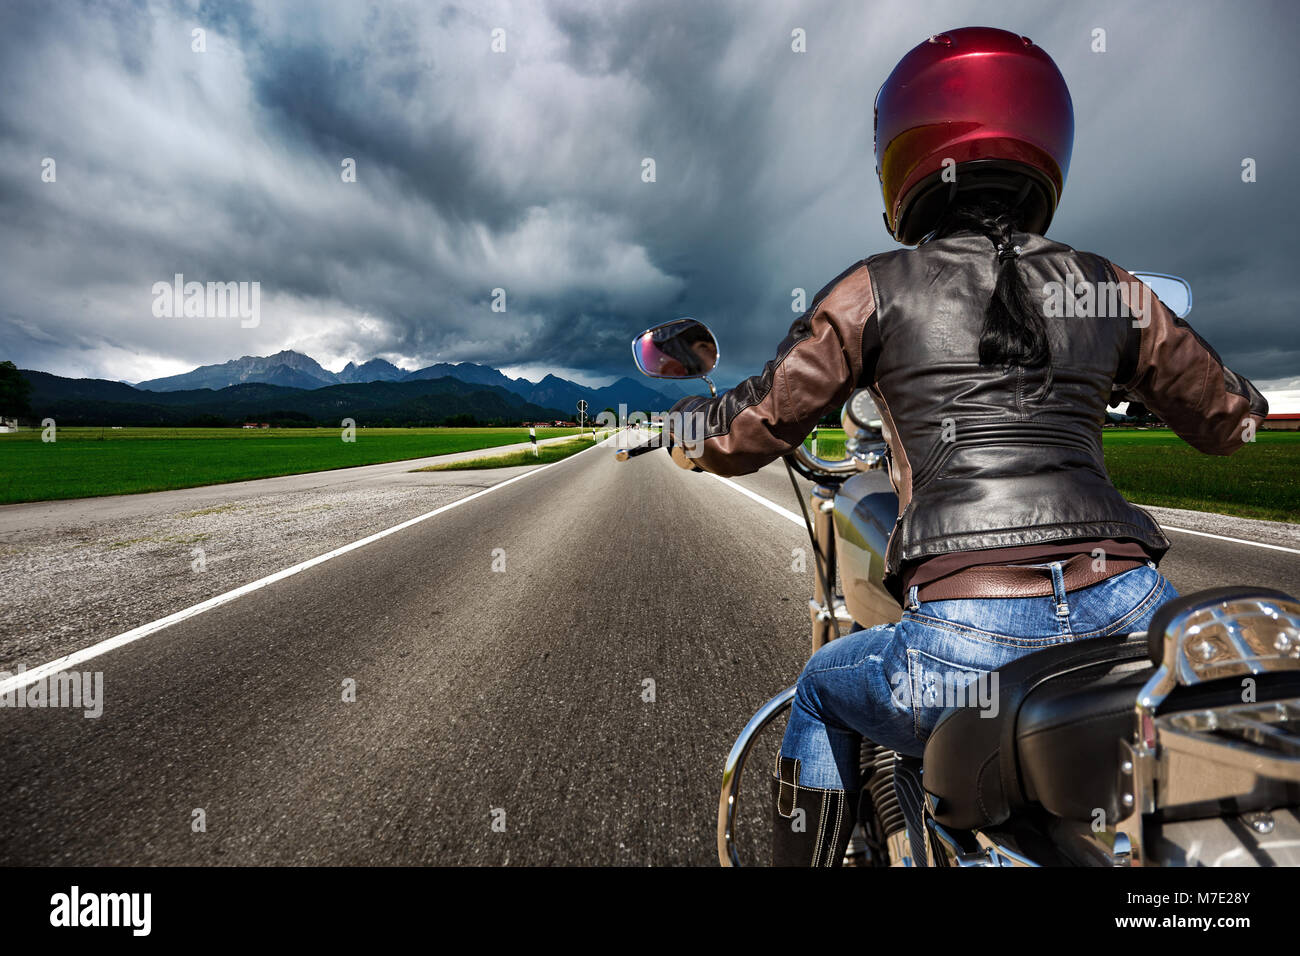 Biker Girl on a motorcycle dévaler la route dans un orage - Forggensee et Schwangau, Bavière, Allemagne Banque D'Images